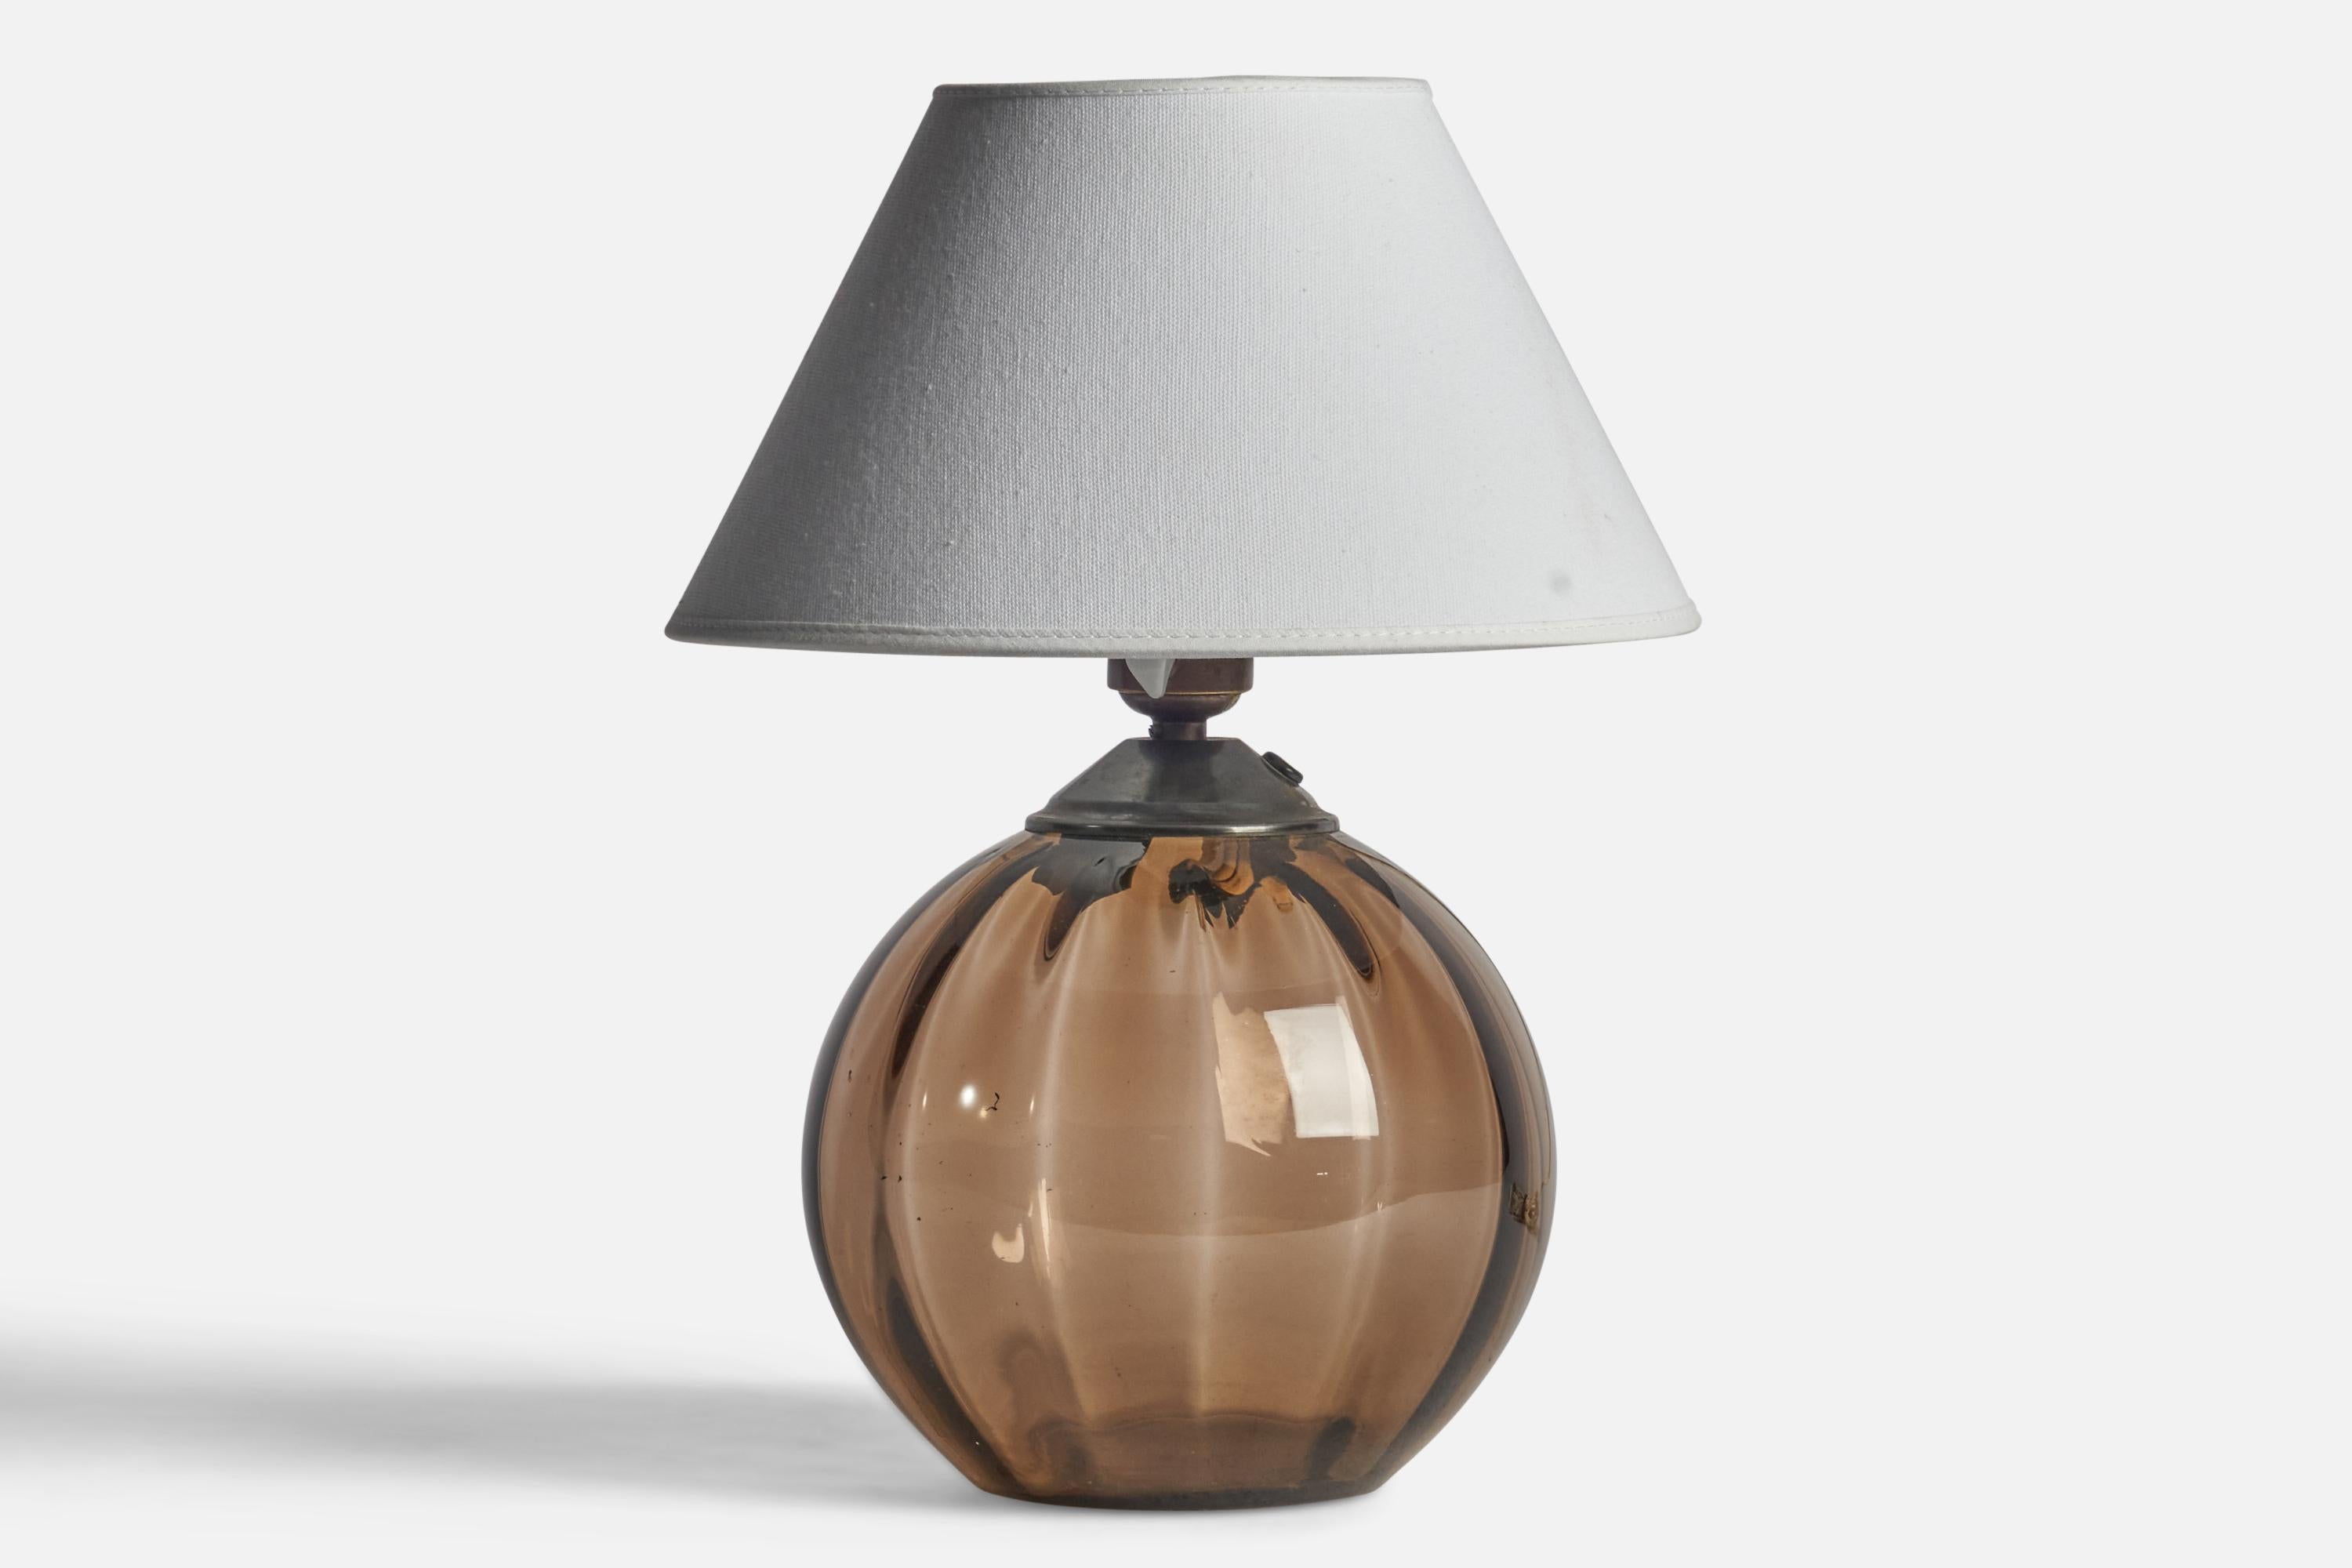 Tischlampe aus Glas und Messing, entworfen von Edward Hald und hergestellt von Orrefors, Schweden, 1930er Jahre.

Abmessungen der Lampe (Zoll): 10,25